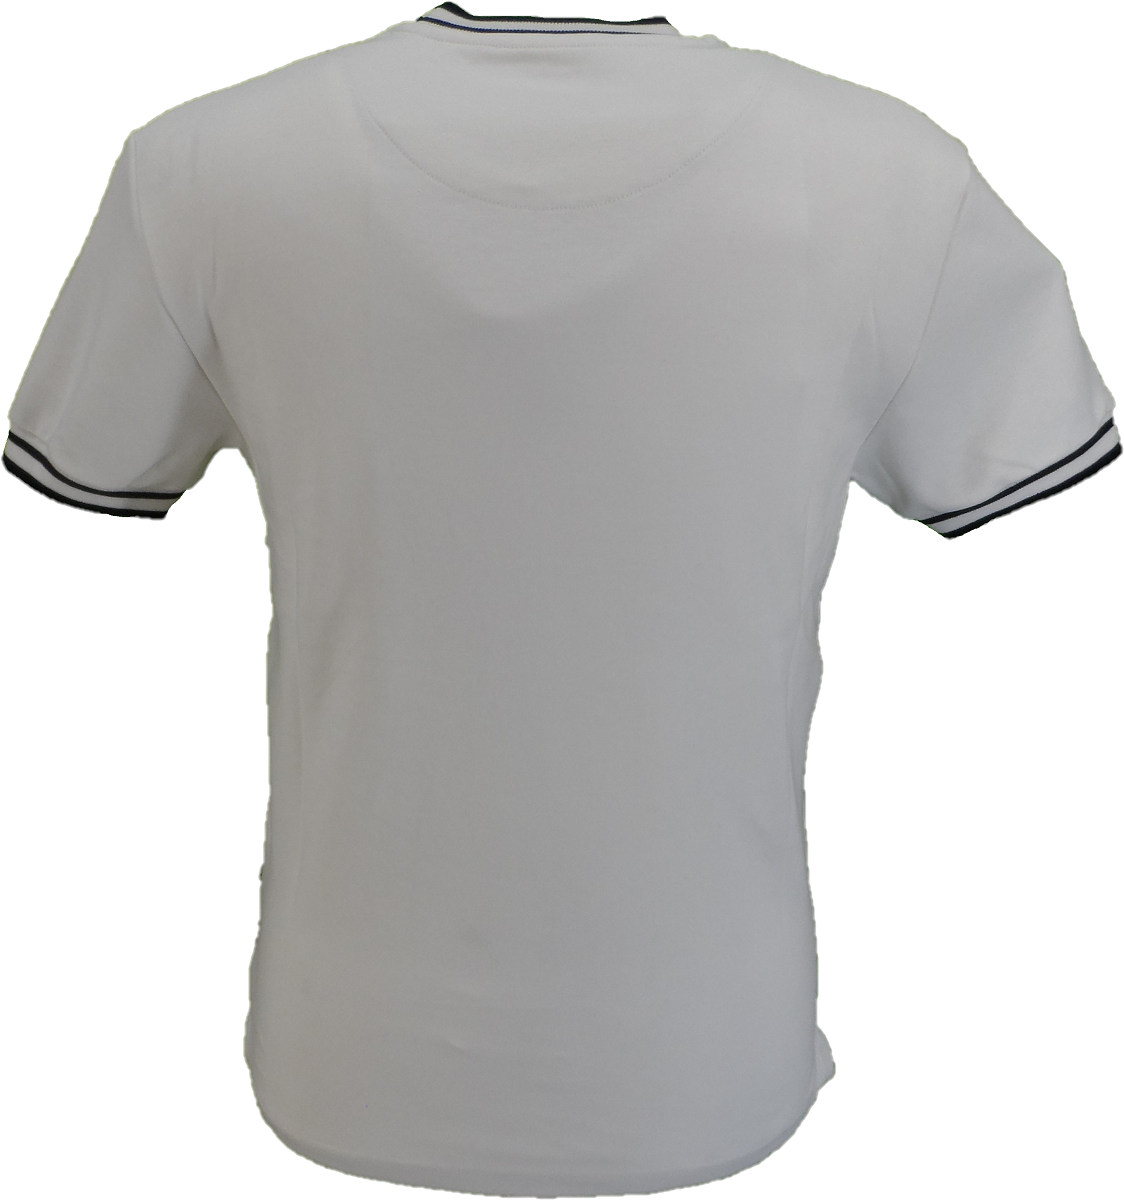 Ecrufarbene Hahnentritt-T-Shirts für Herren Ska & Soul